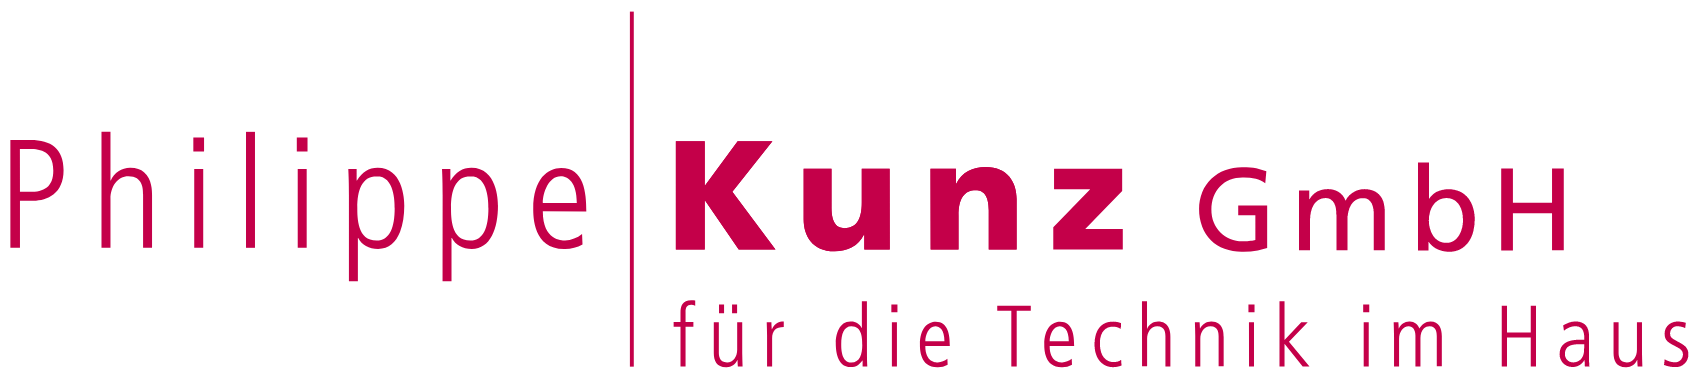 Philippe Kunz GmbH